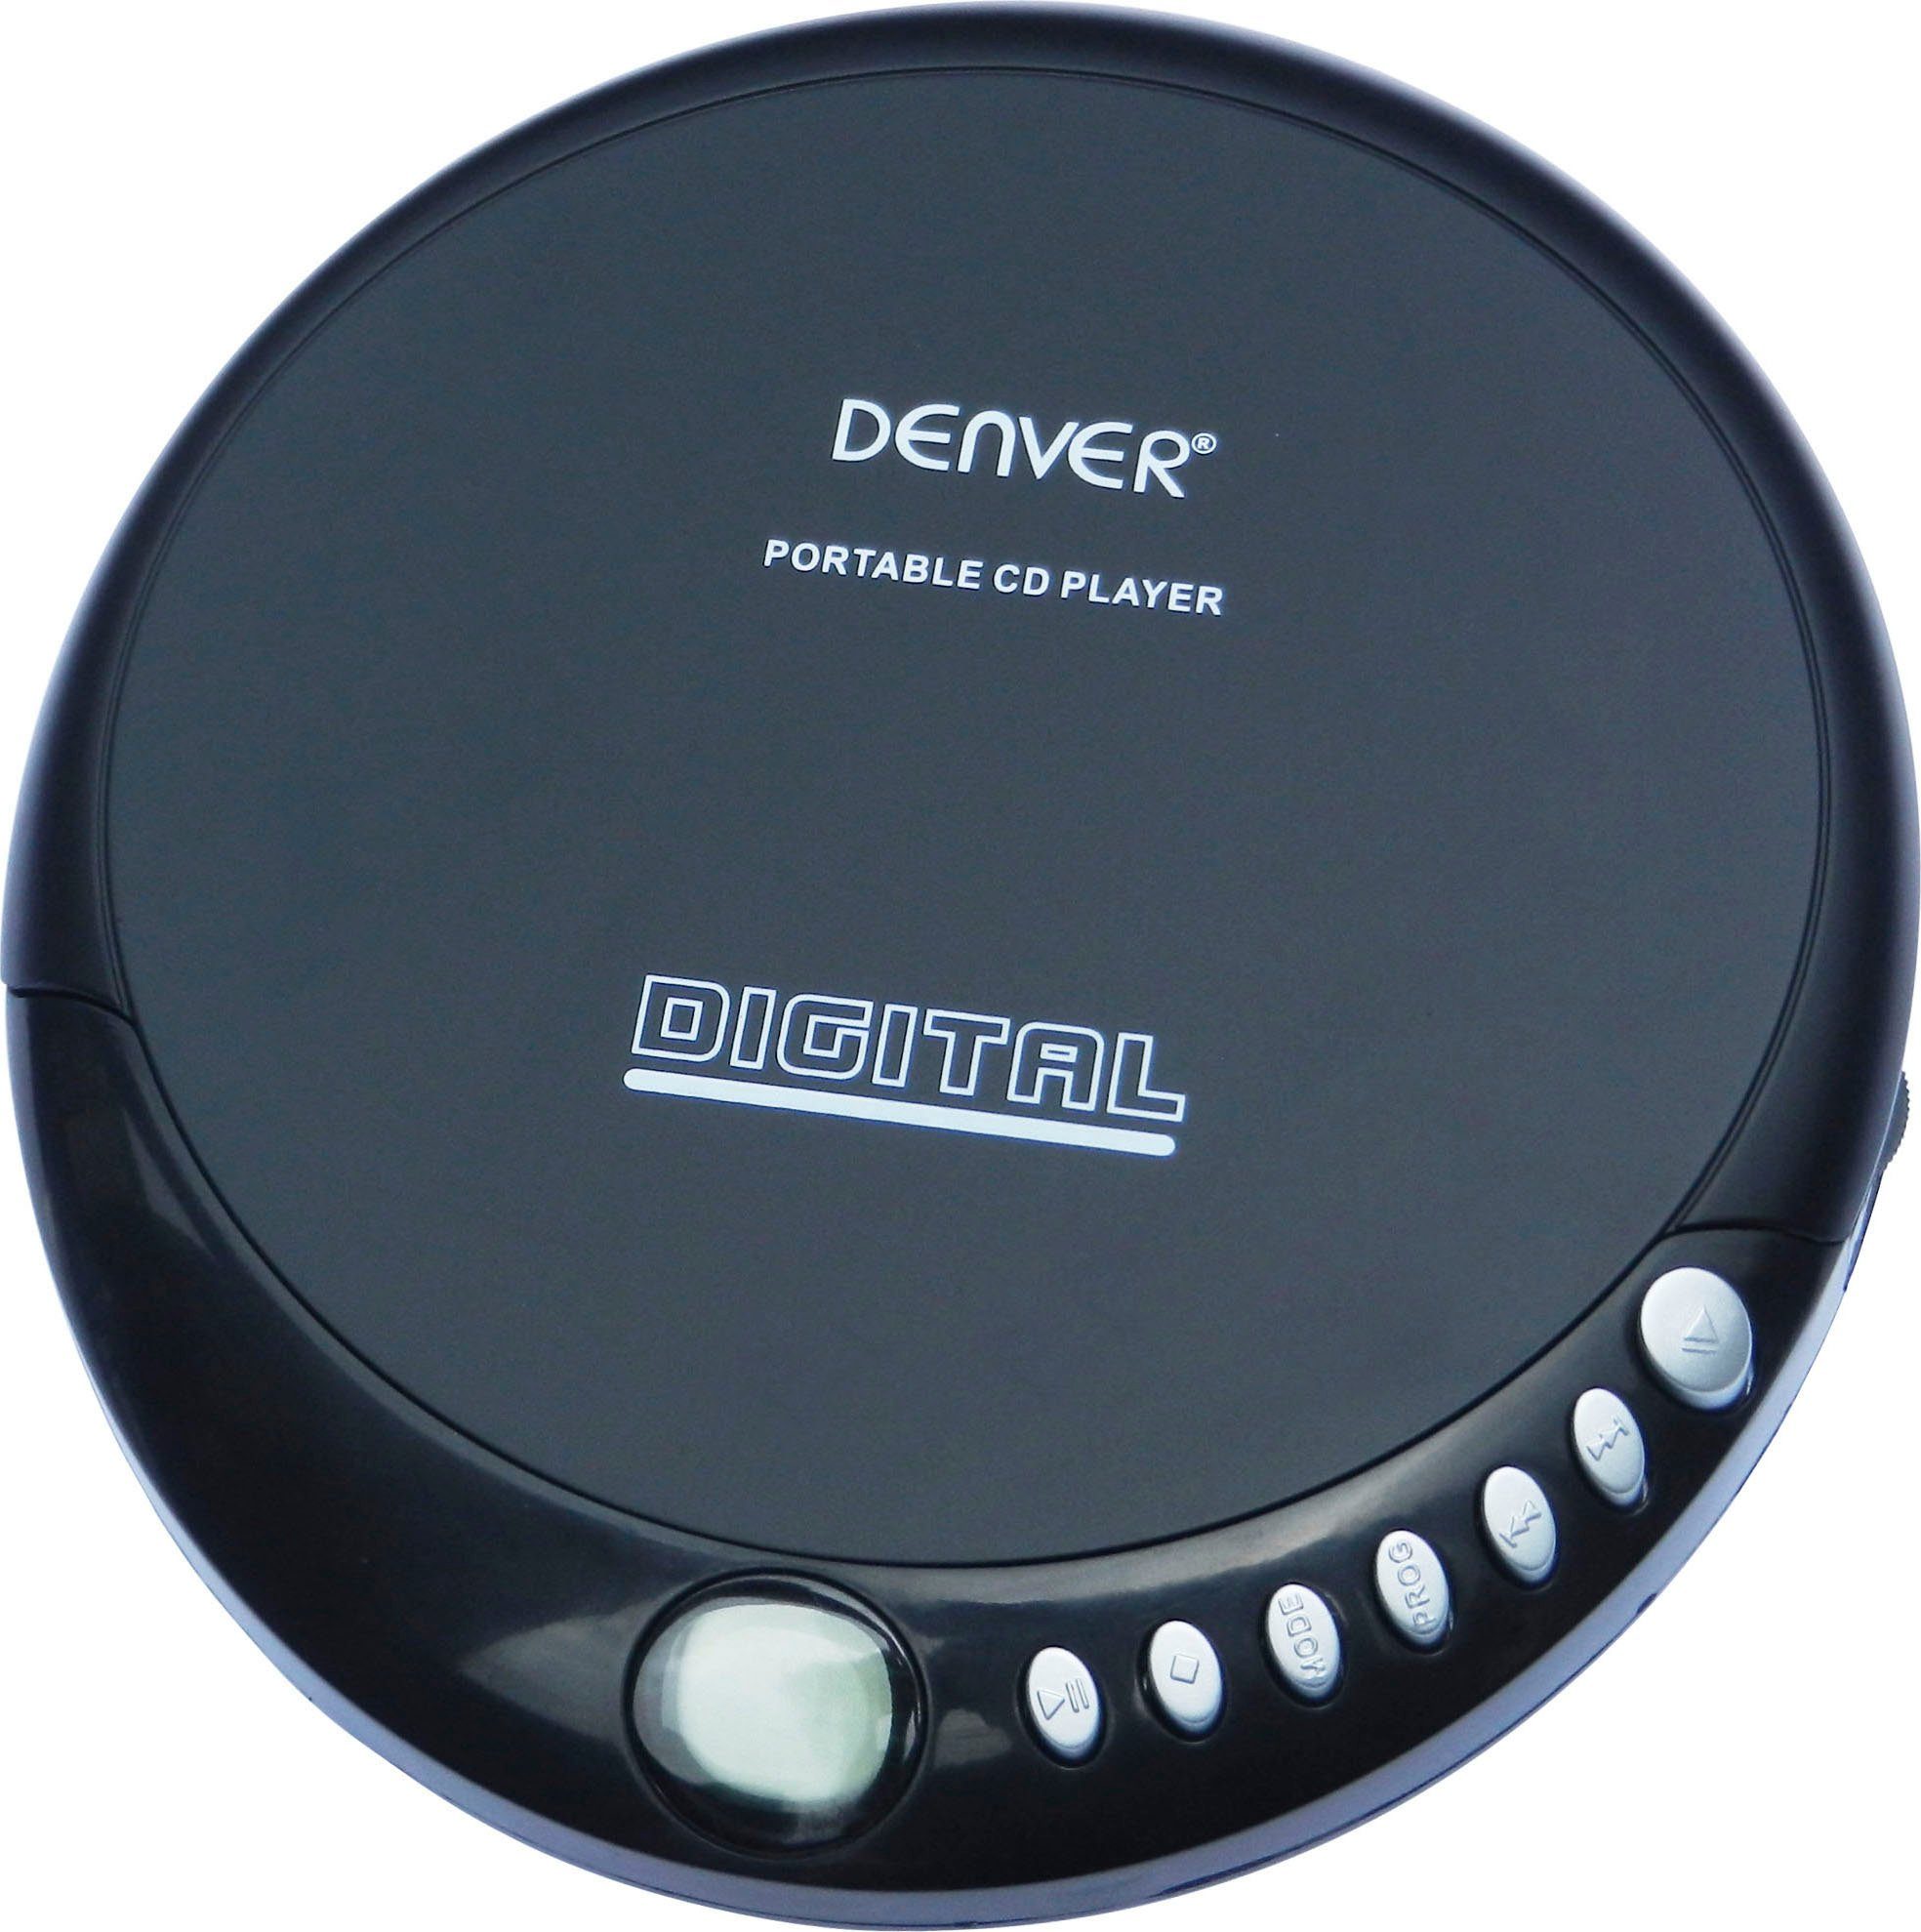 DM-24 CD-Player Denver